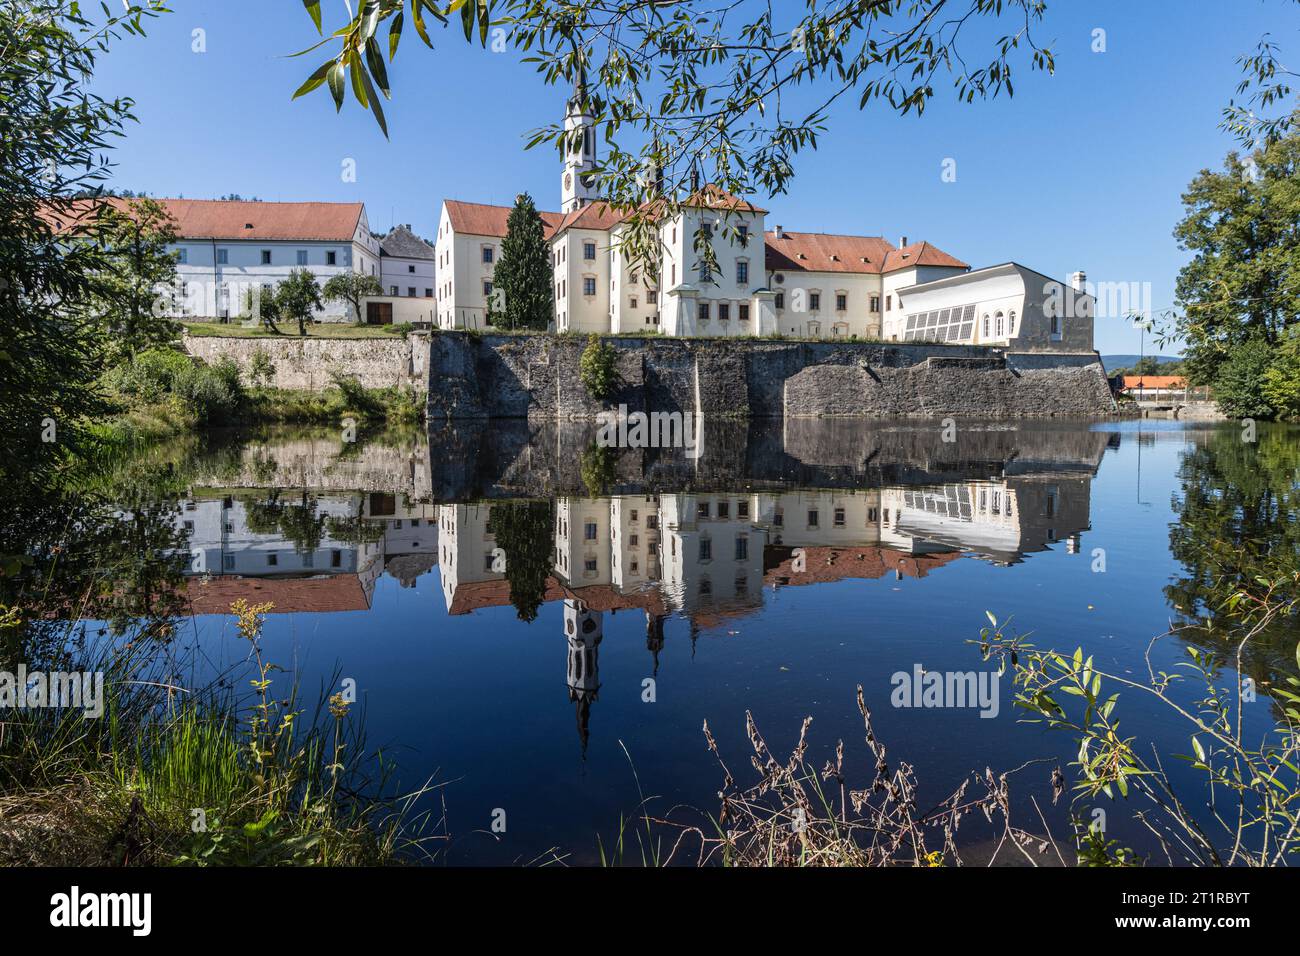 Ancien monastère historique à Vissy Brod. Photo de haute qualité d'un monastère dans le sud de la République tchèque. Banque D'Images